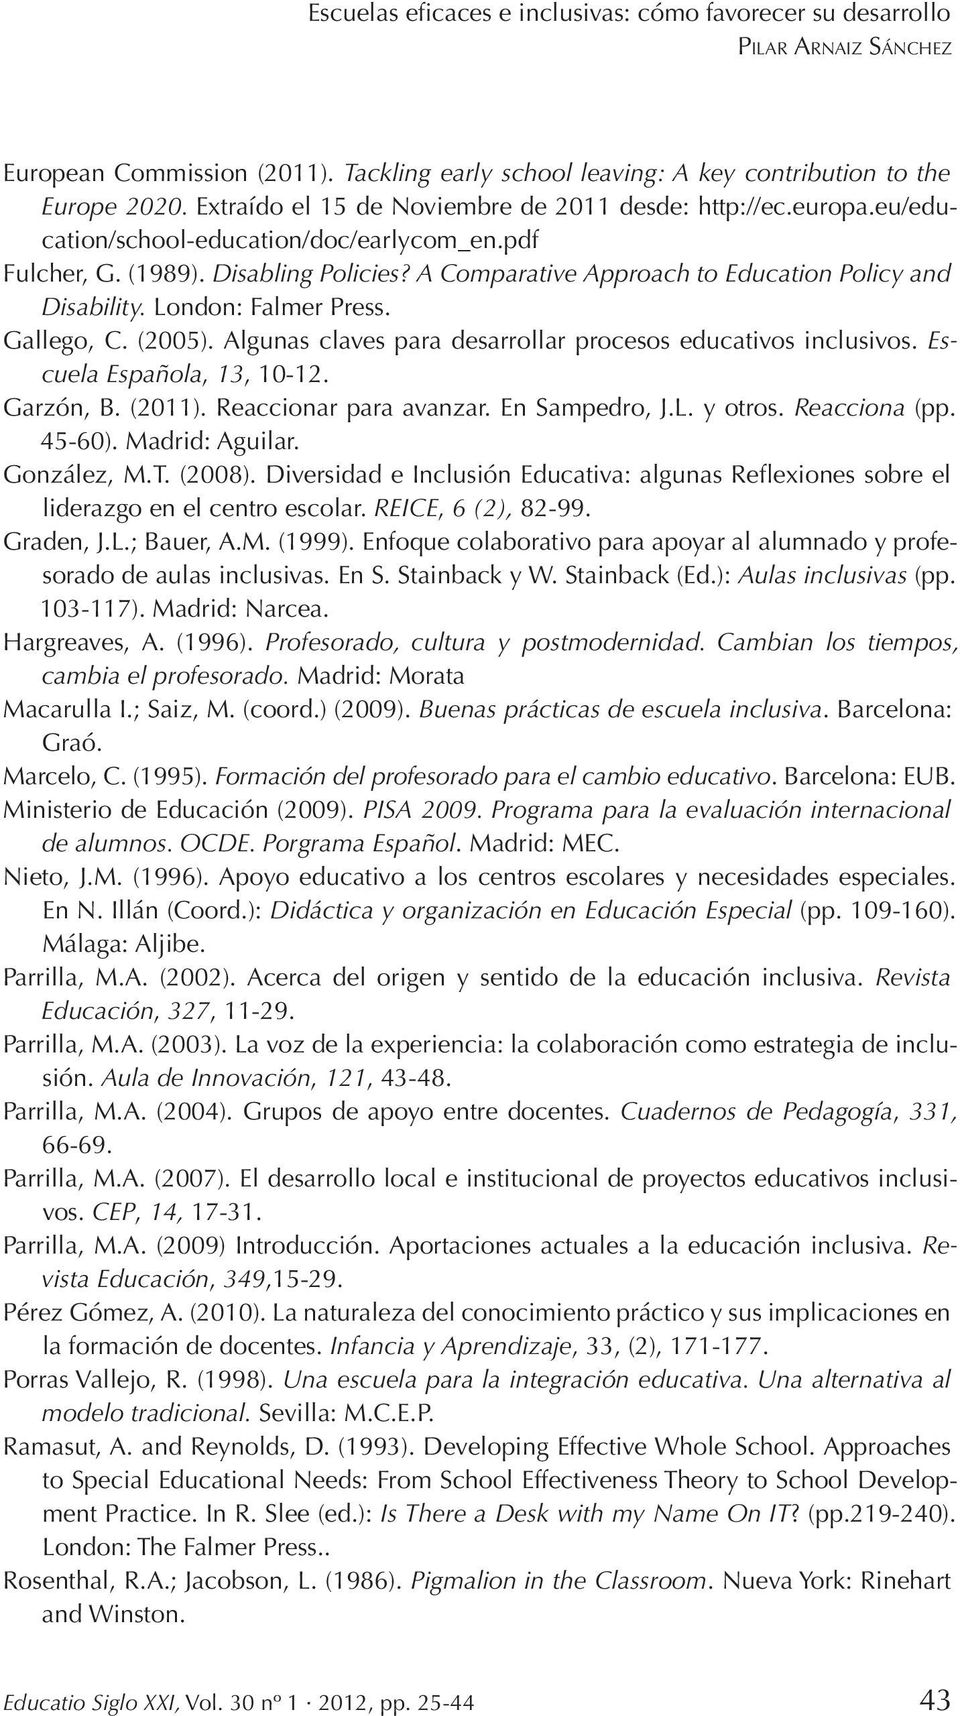 Algunas claves para desarrollar procesos educativos inclusivos. Escuela Española, 13, 10-12. Garzón, B. (2011). Reaccionar para avanzar. En Sampedro, J.L. y otros. Reacciona (pp. 45-60).